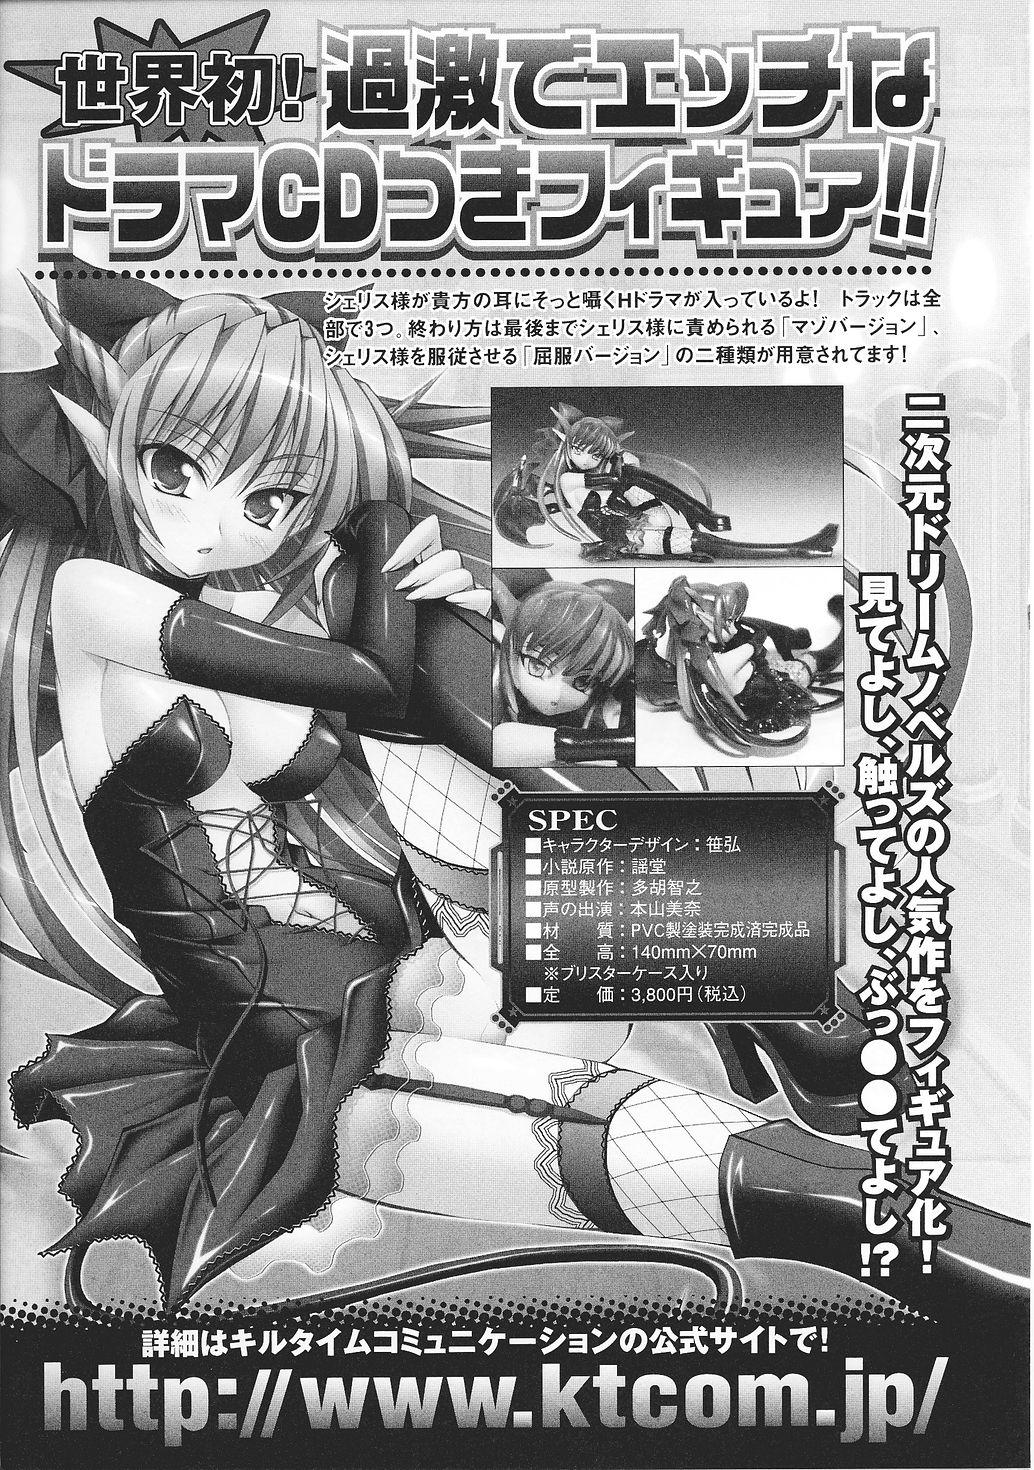 Rubbing Ma ga Ochiru Yoru Anthology Comics 2 - Ma ga ochiru yoru Gorda - Page 157